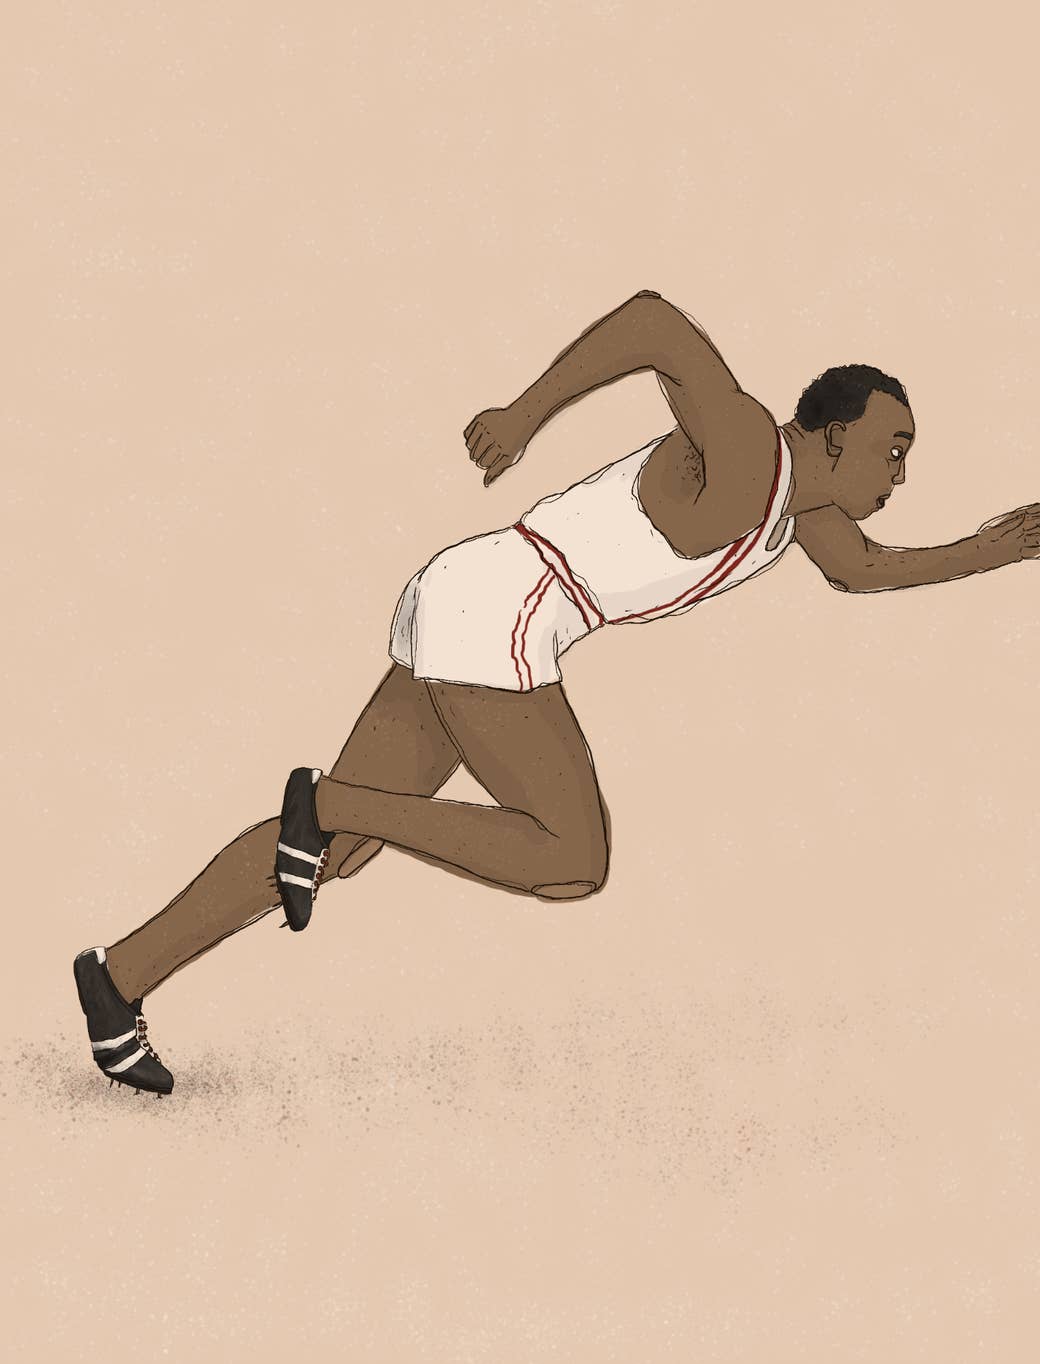 Jesse Owens Adidas Olympics